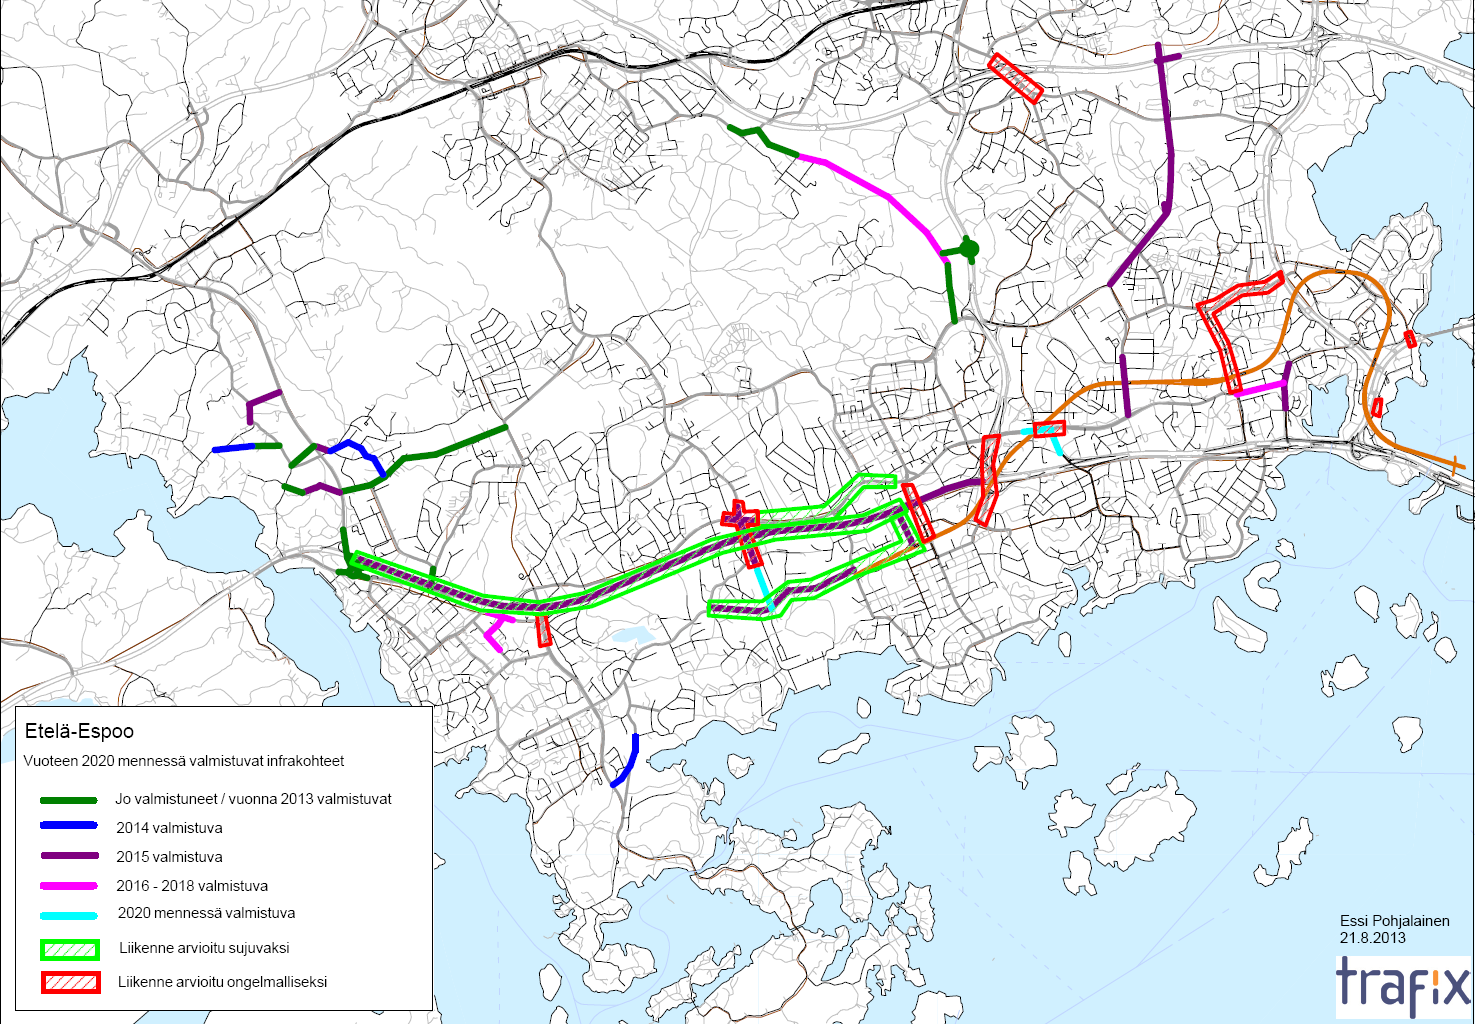 9 Kuva 7. Tie- ja katuverkon kehittämishankkeet vuoteen 2020 mennessä sekä arvioidut liikenteelliset ongelmakohdat Etelä-Espoossa (lähde: Espoon kaupunki).